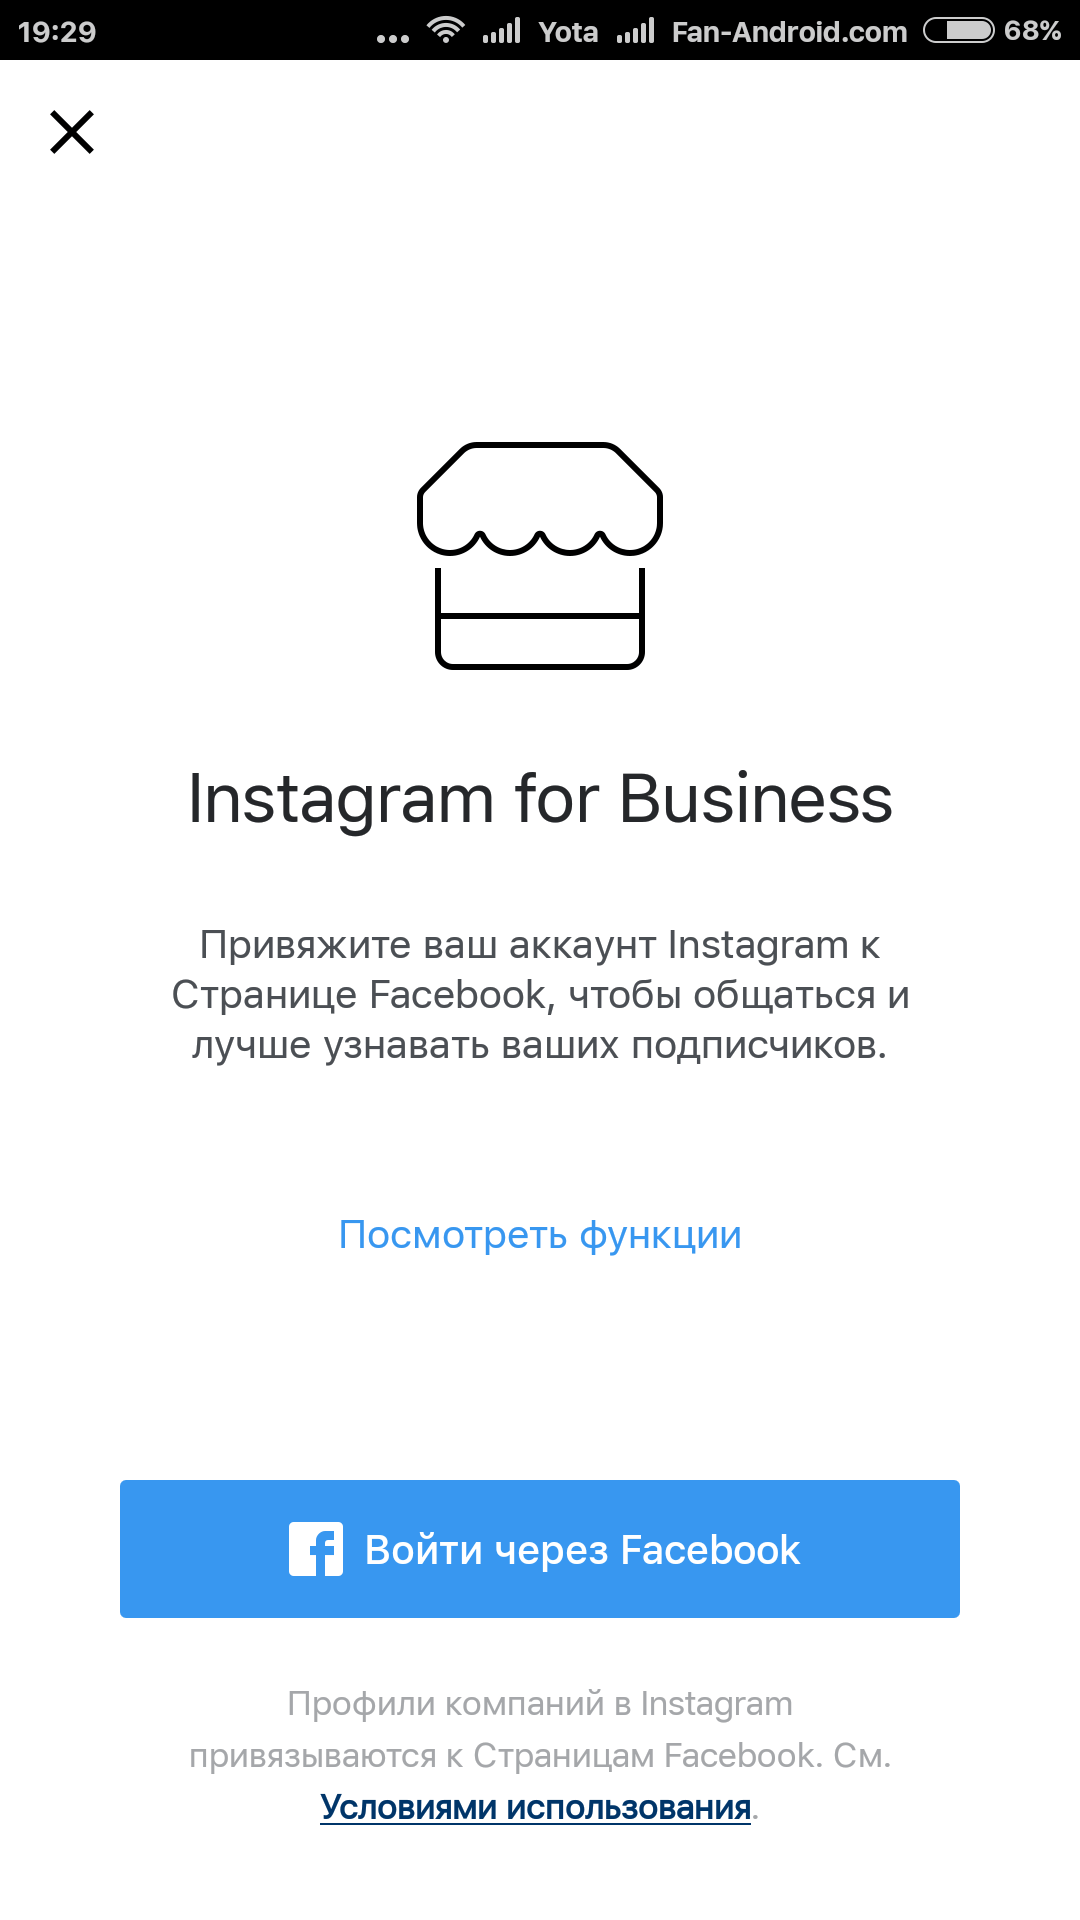 Руководство по созданию и продвижению аккаунта в Instagram